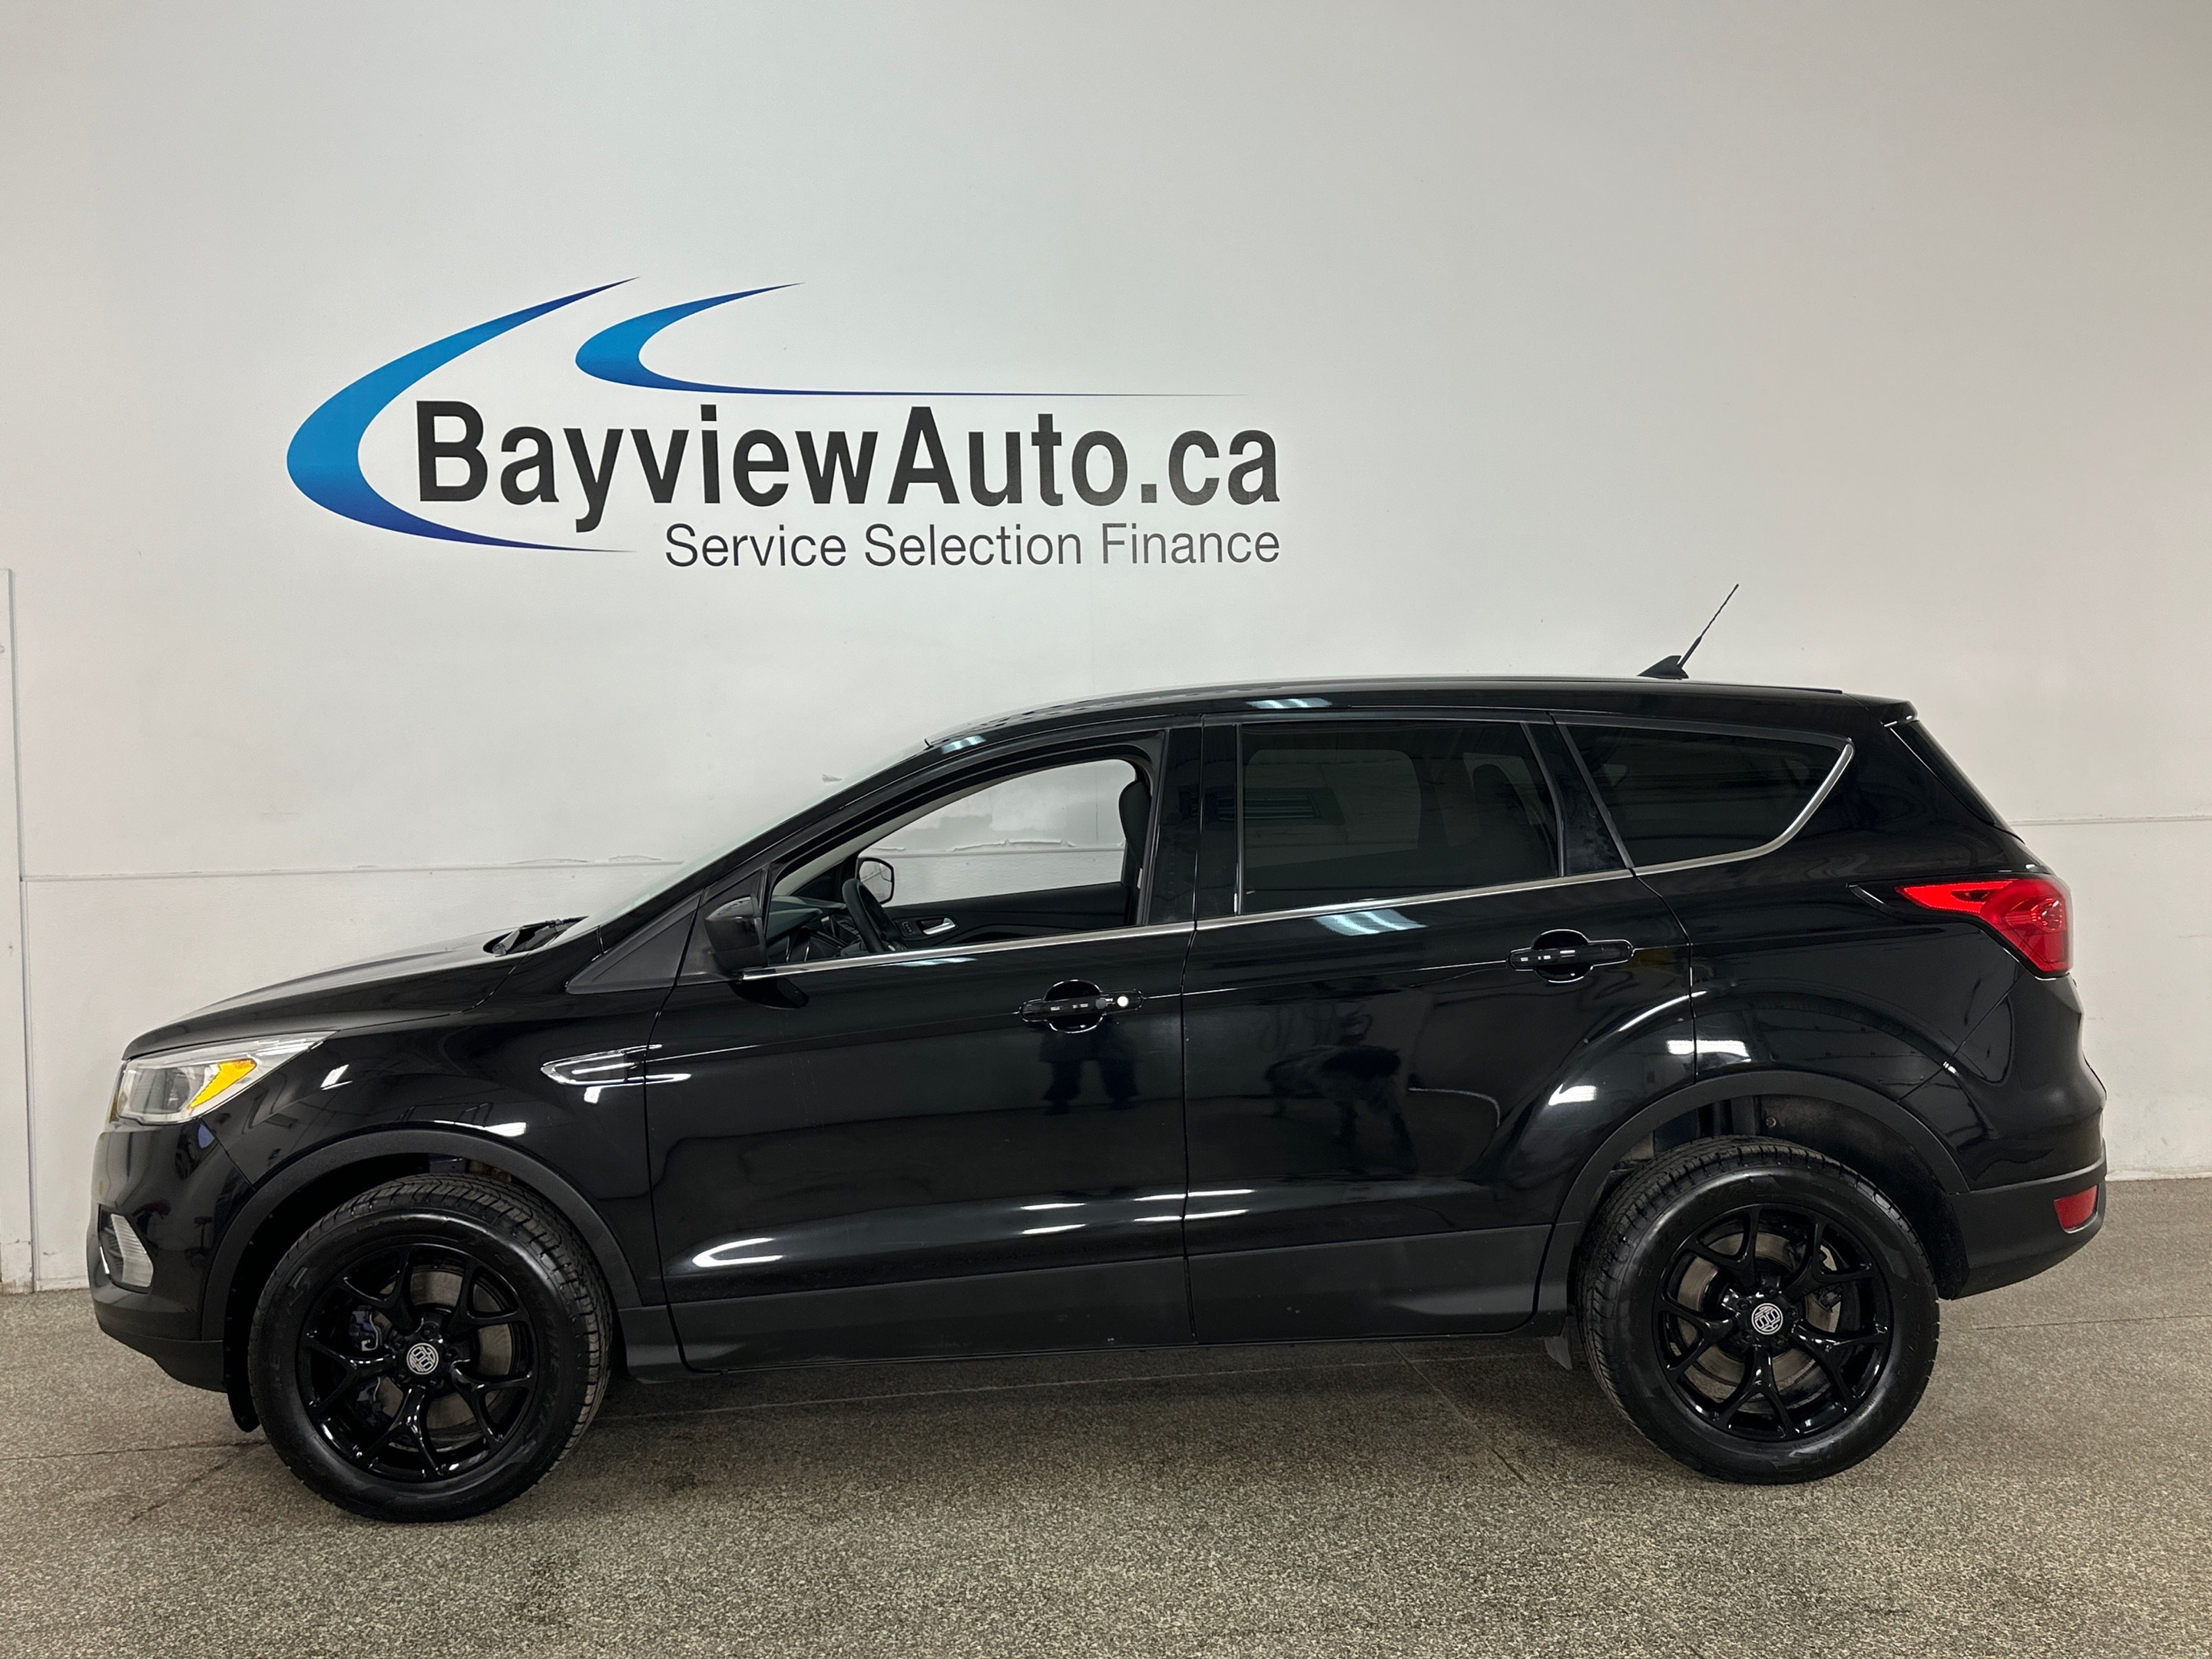 2019 Ford Escape SE 4WD BLACK ALLOYS! PWR SEAT, REMOTE START, MORE!